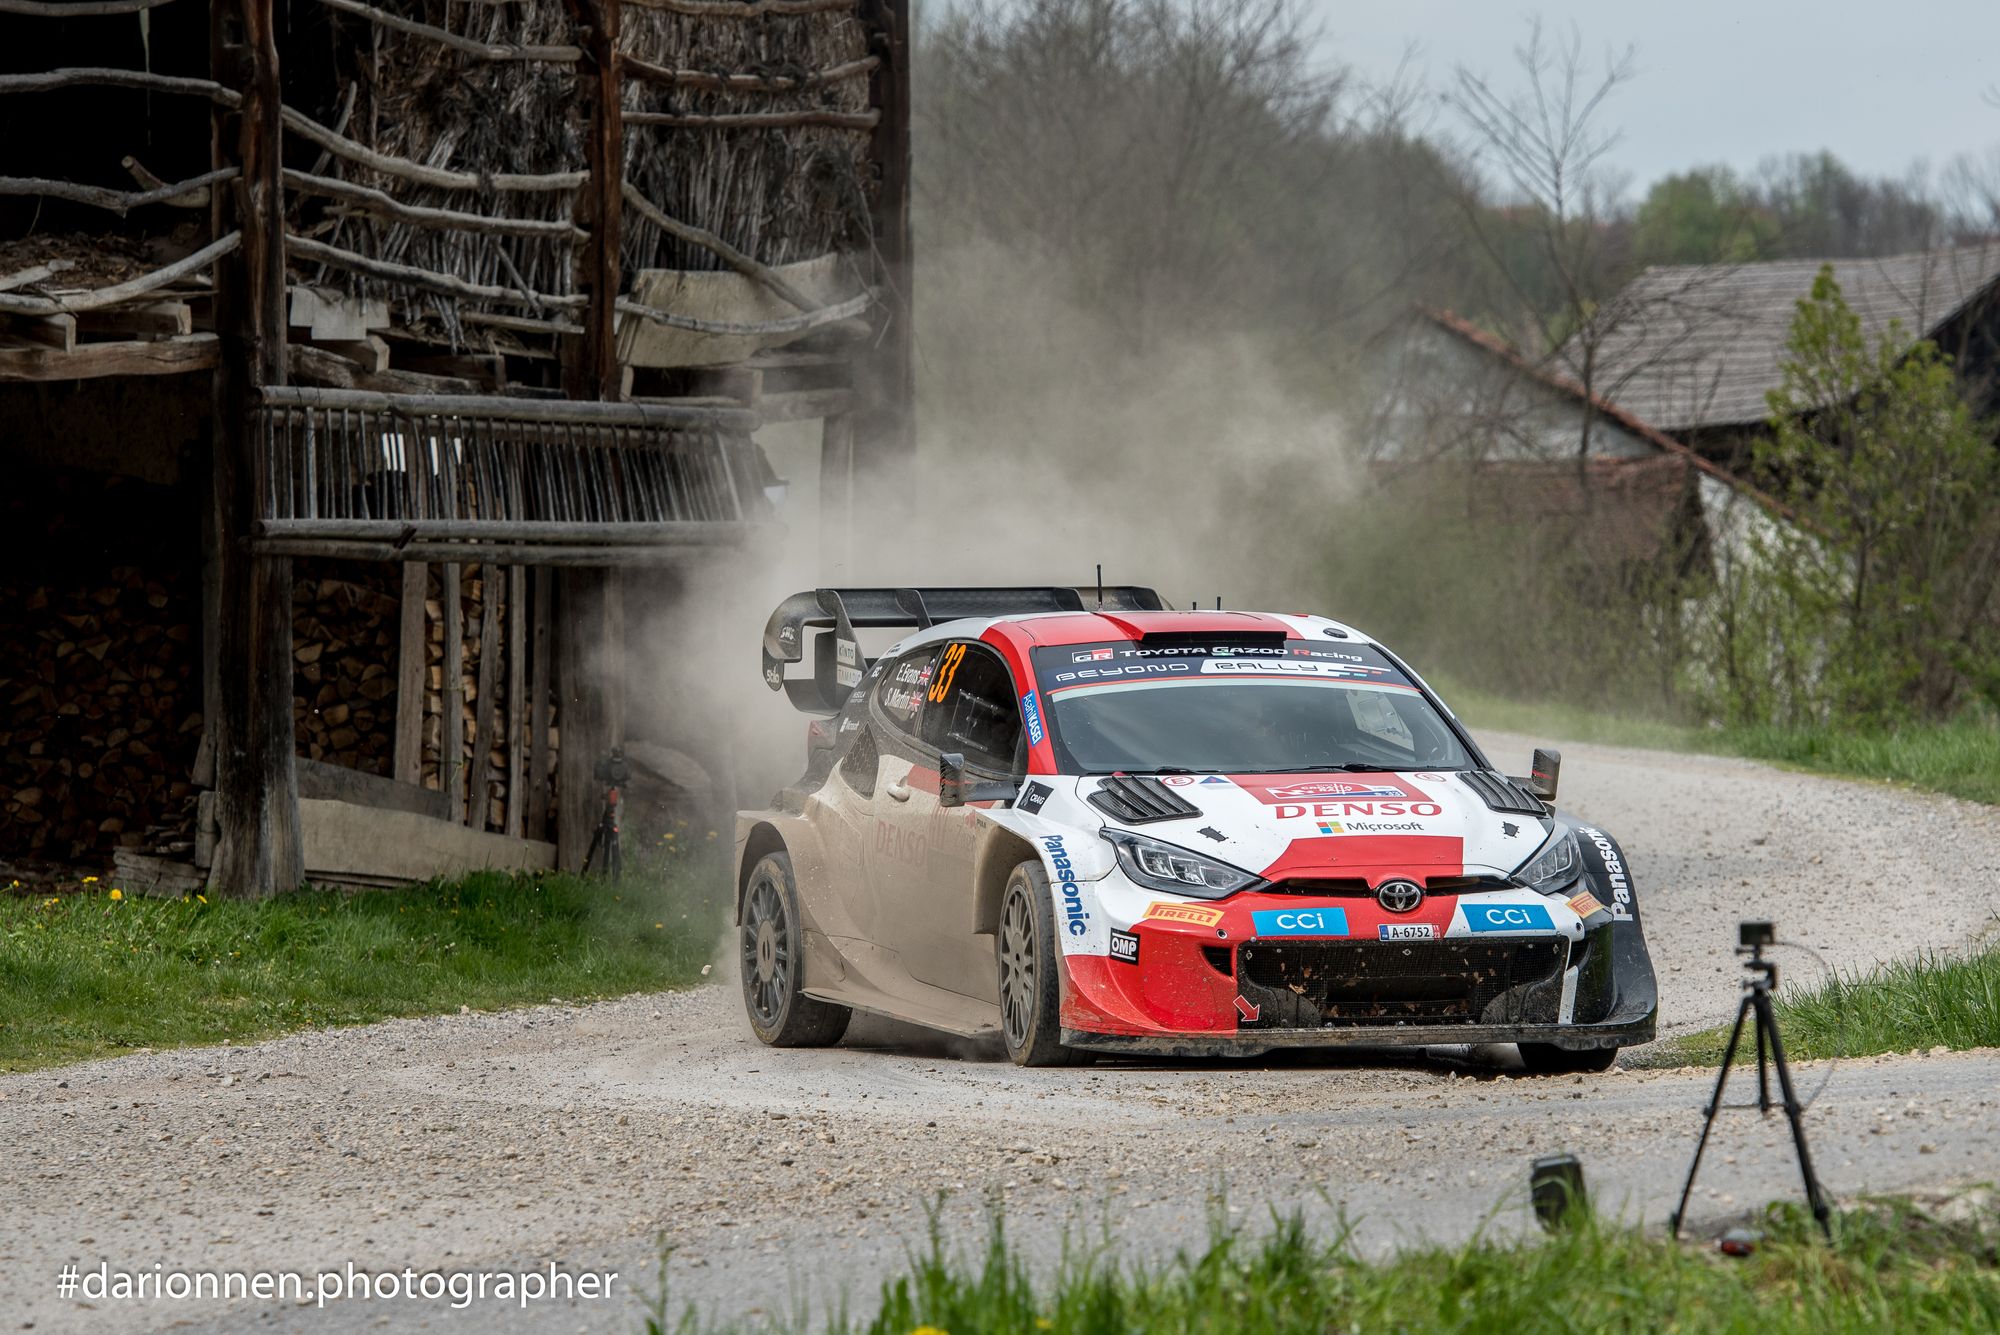 L'impegnativo asfalto croato metterà alla prova gli assi del WRC